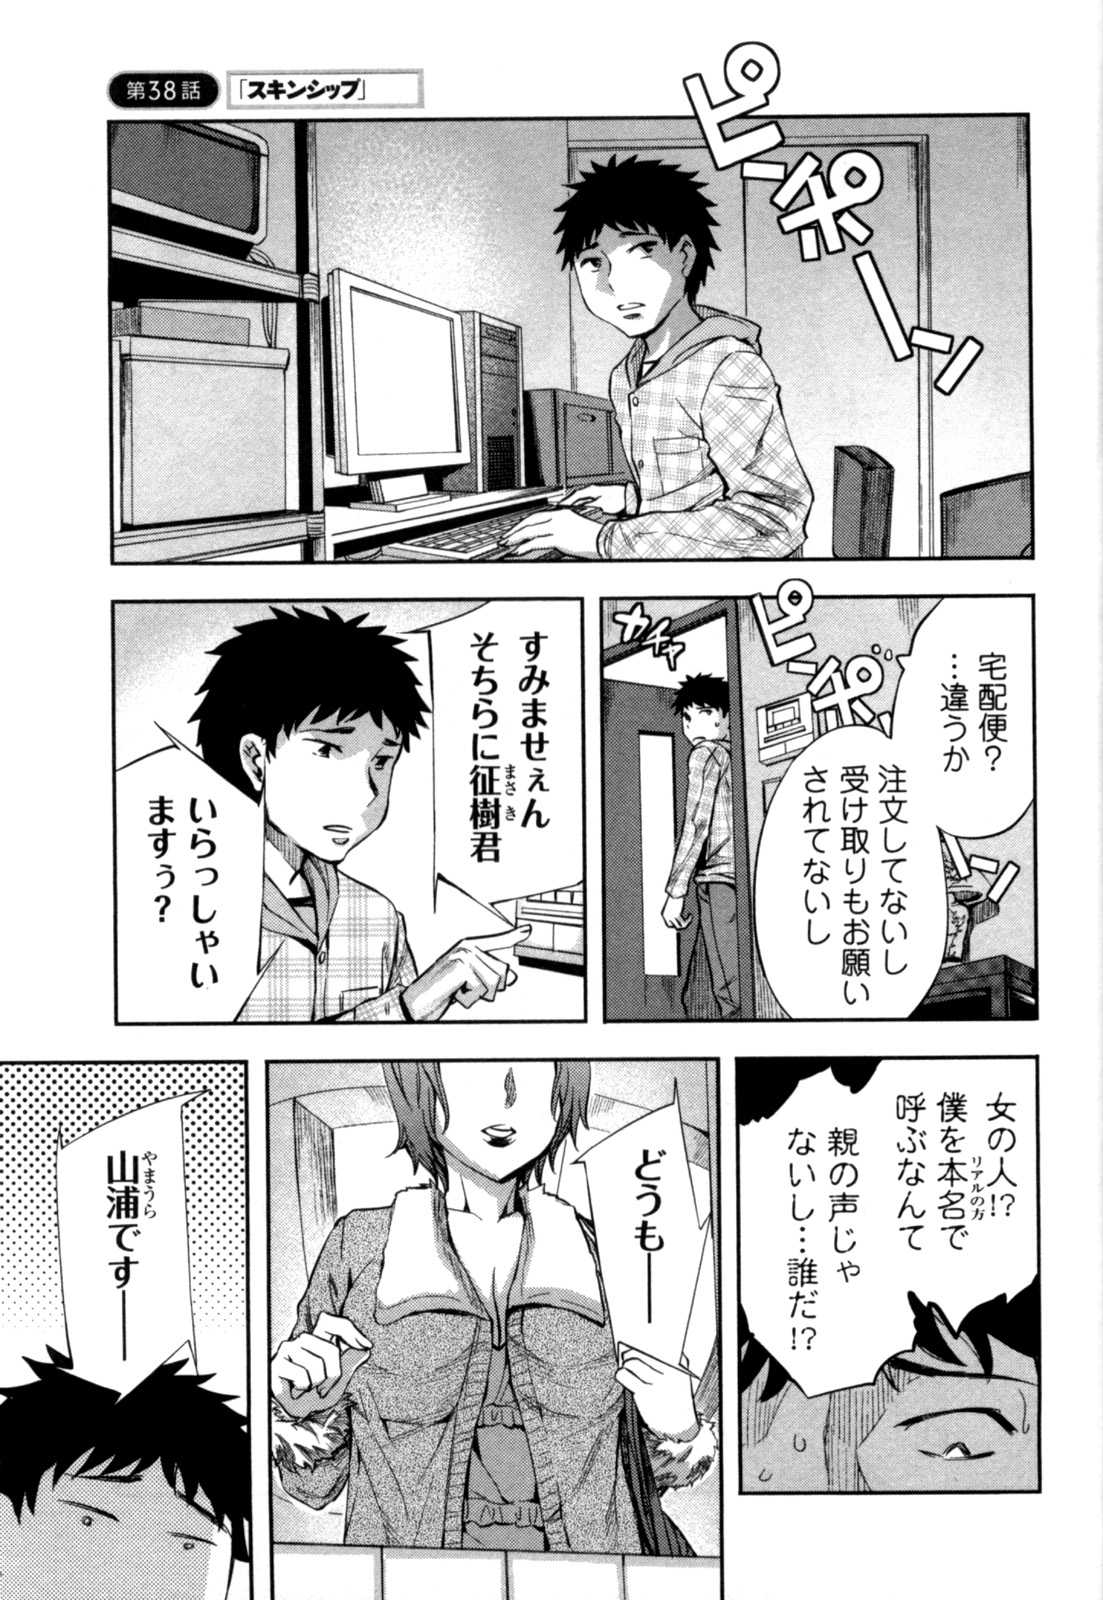 [Emua] Offline Game Vol.5 [えむあ] おふらいんげーむ 第05巻 [2011-09-28]